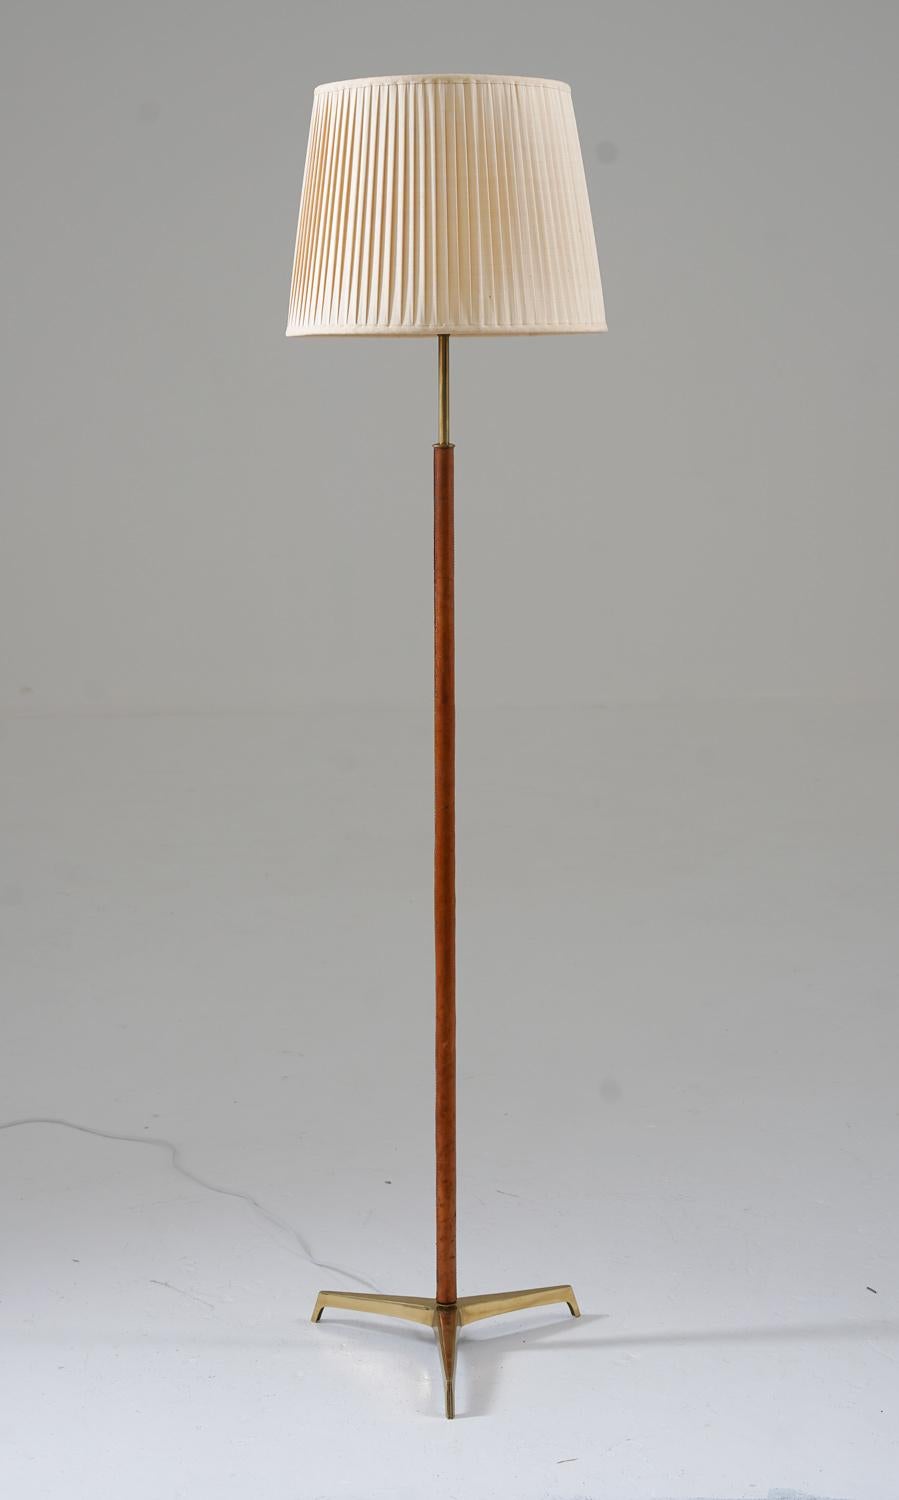 Lampadaire tripode scandinave du milieu du siècle en laiton et cuir, fabriqué en Suède, années 1960.
Cette lampe se compose d'une base en laiton recouverte de cuir, reposant sur un pied tripode en laiton massif. La lampe est livrée avec un